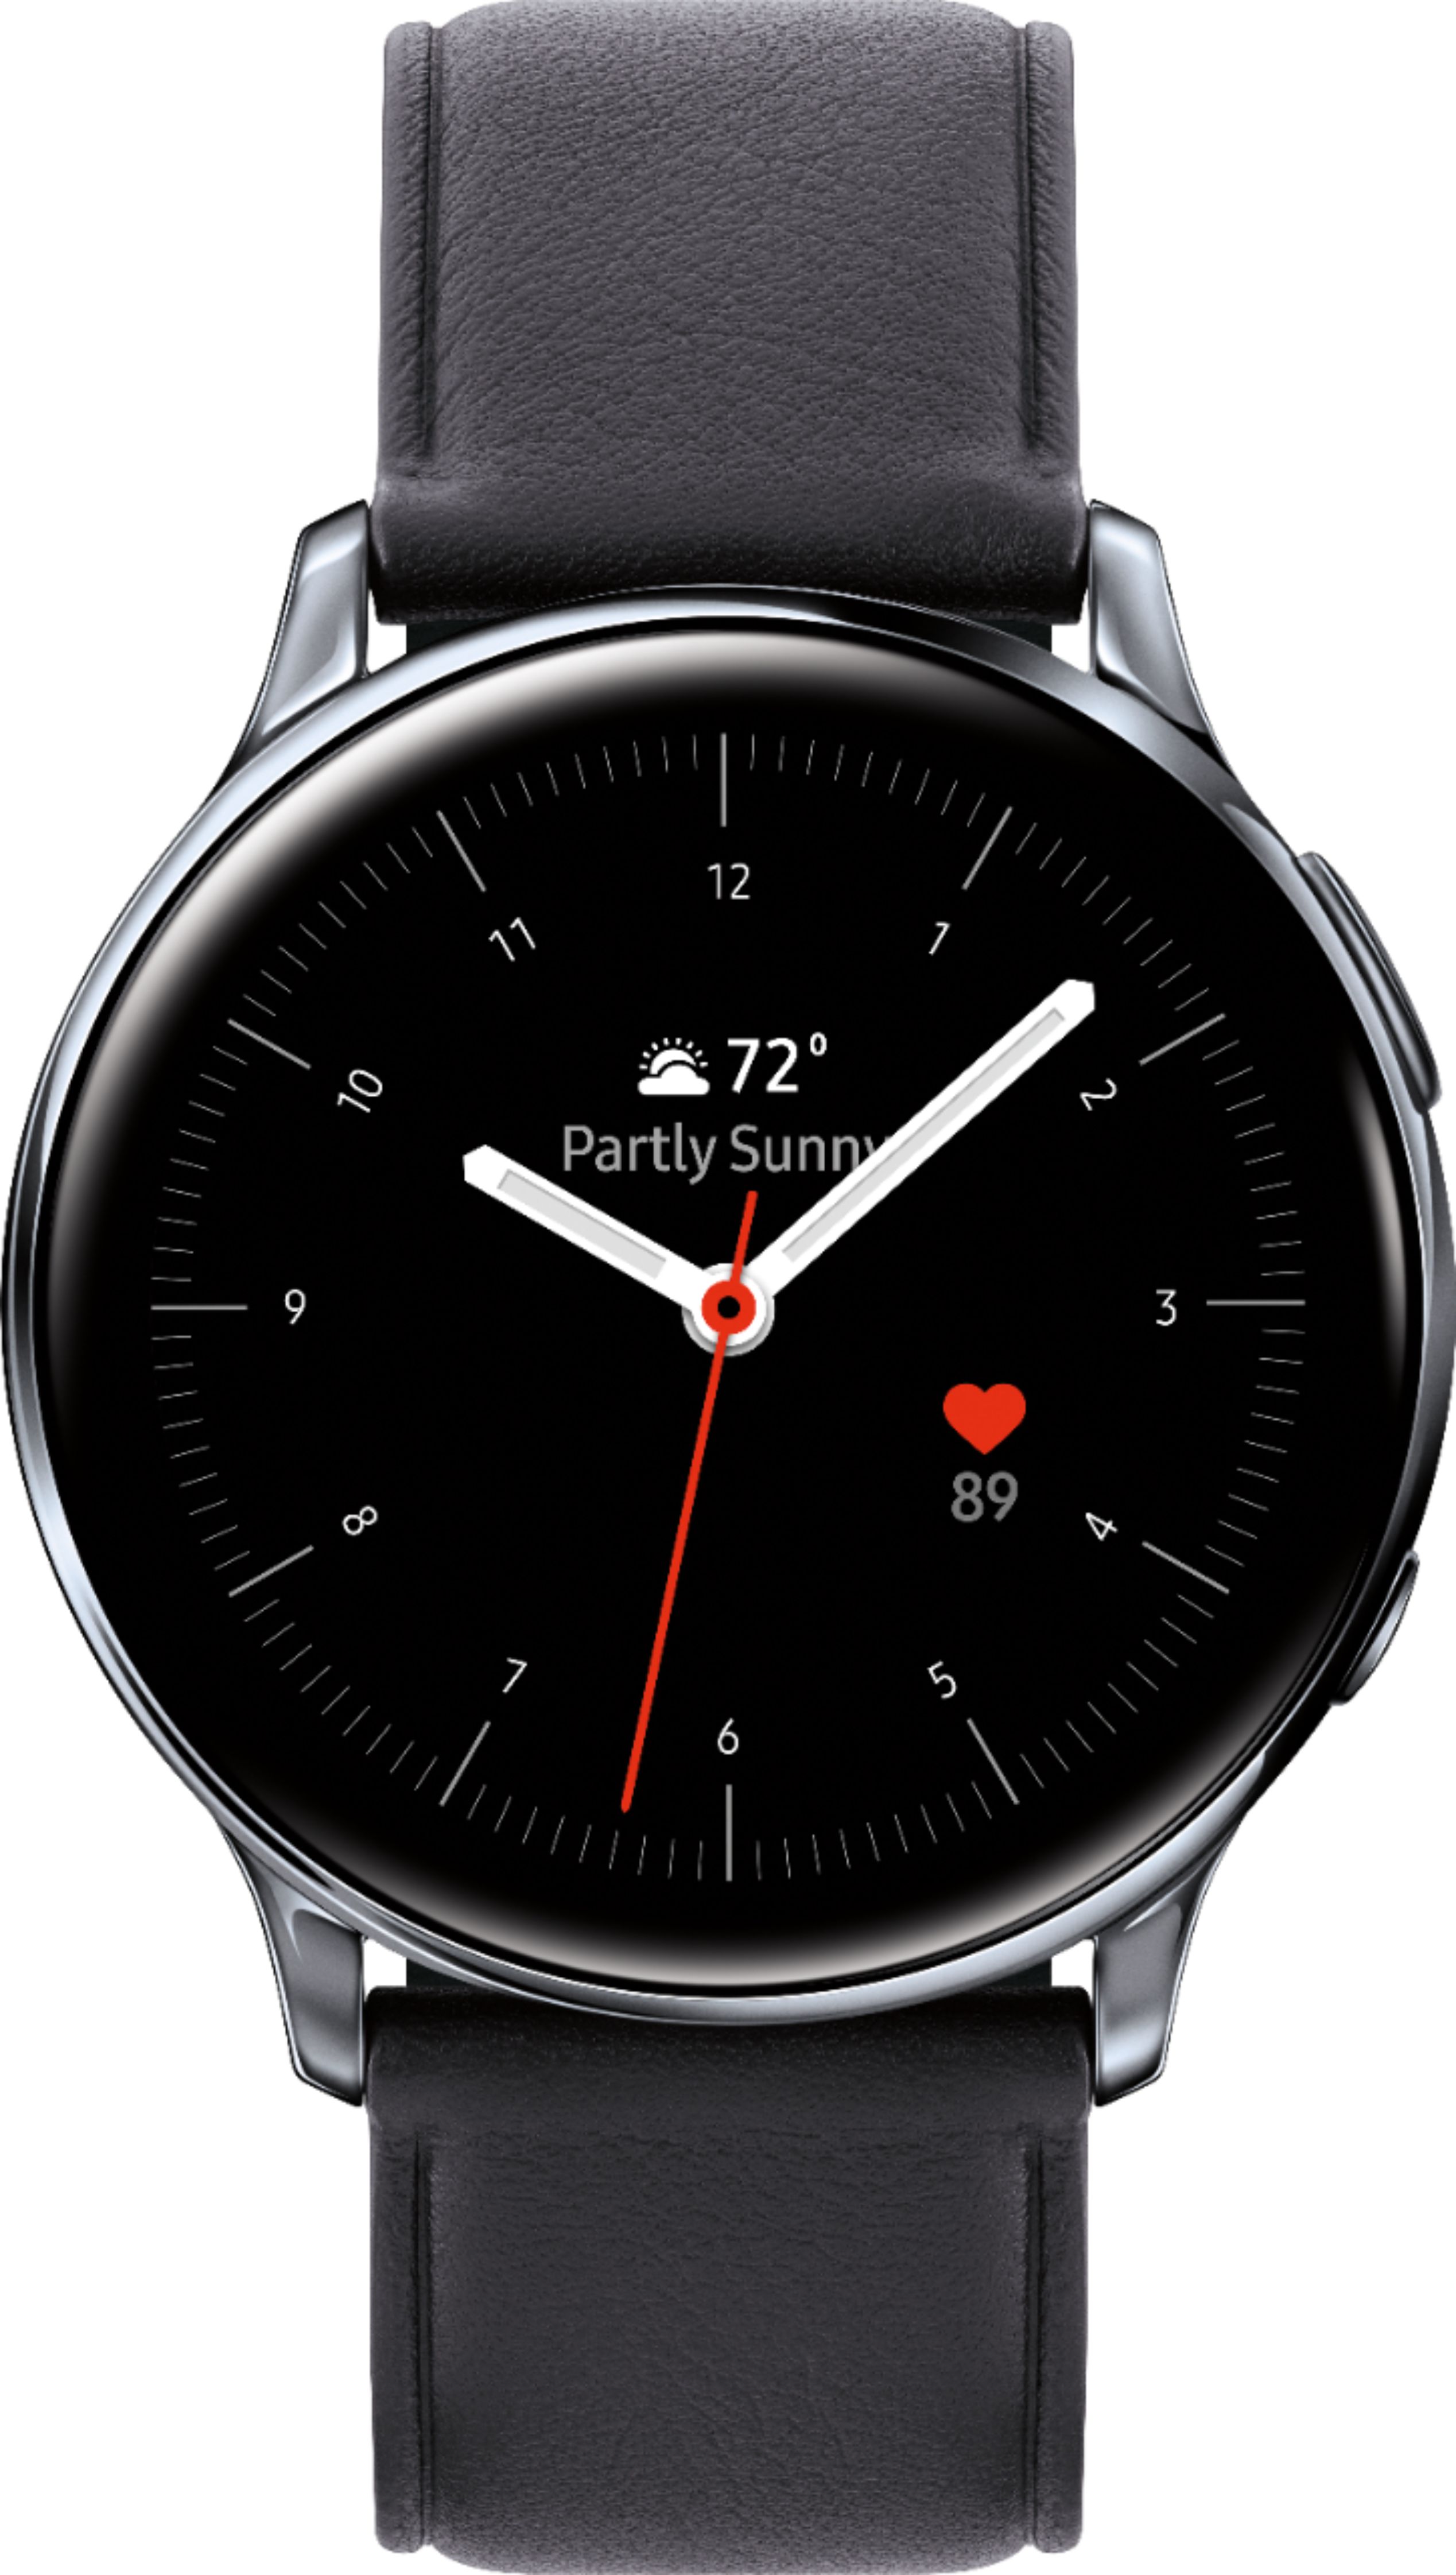 Samsung Galaxy Watch Active2 Smartwatch 40mm Stainless Steel Lte